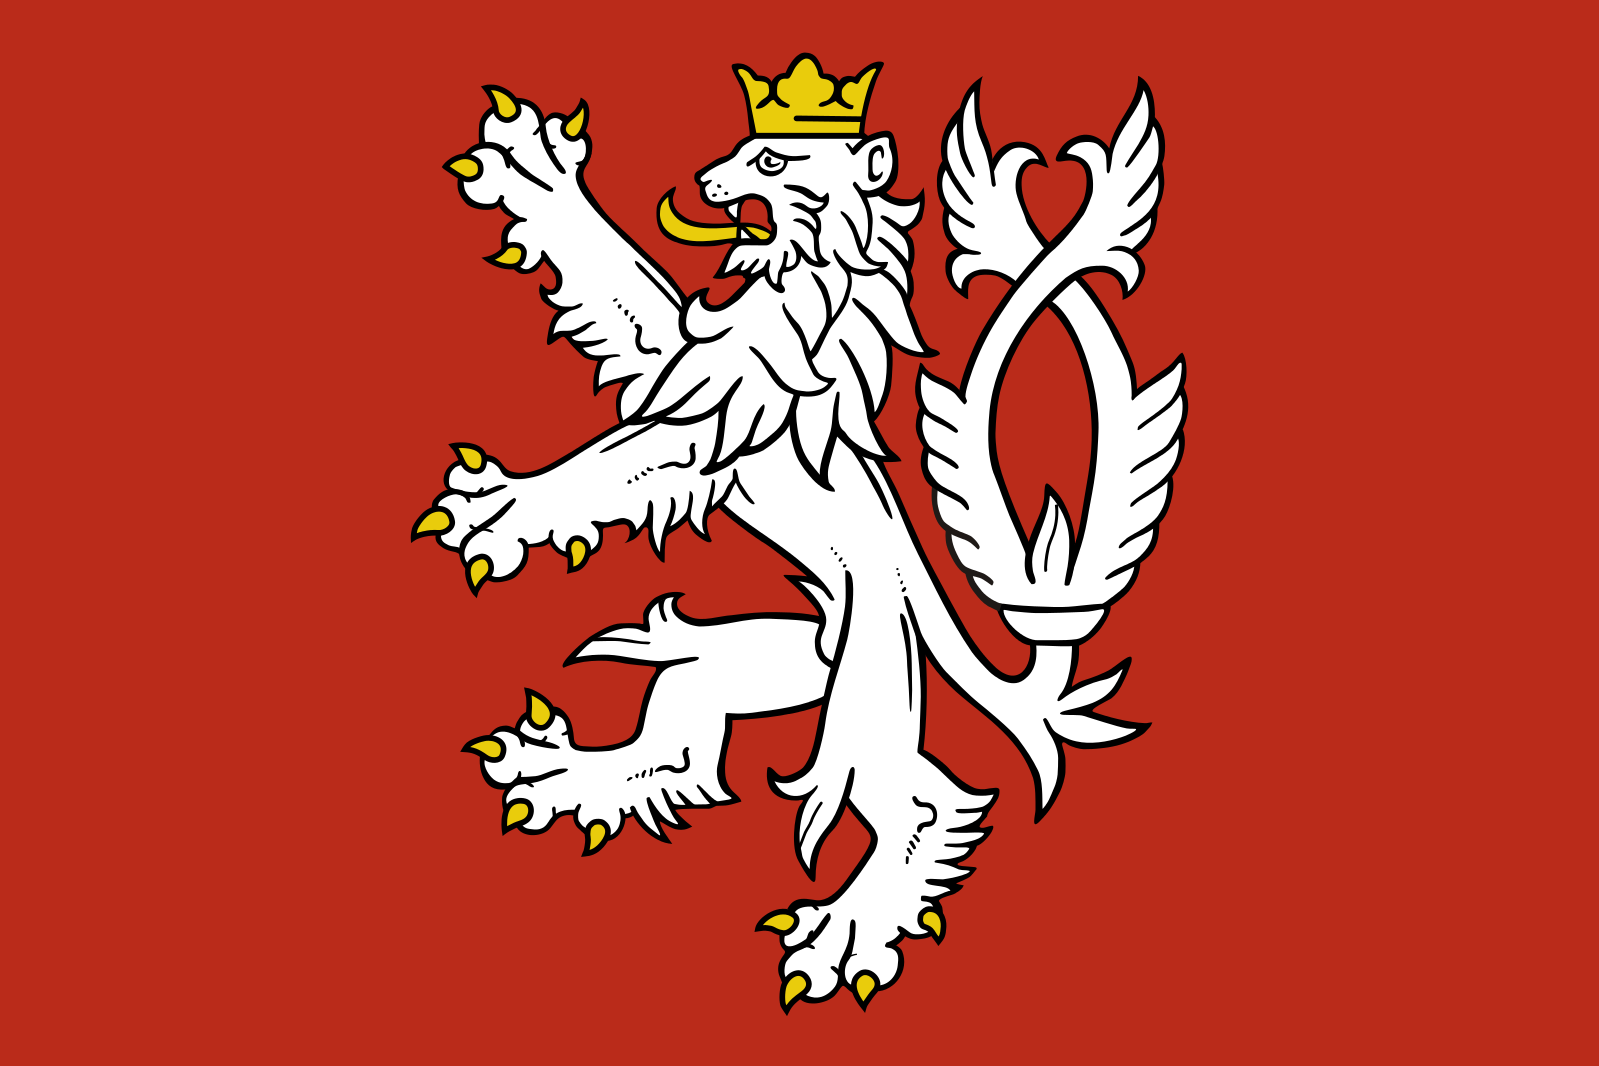 Герб где лев. Флаг королевства Чехии. Богемия Чехия флаг. Флаг королевства Богемии. Герб королевства Богемия.